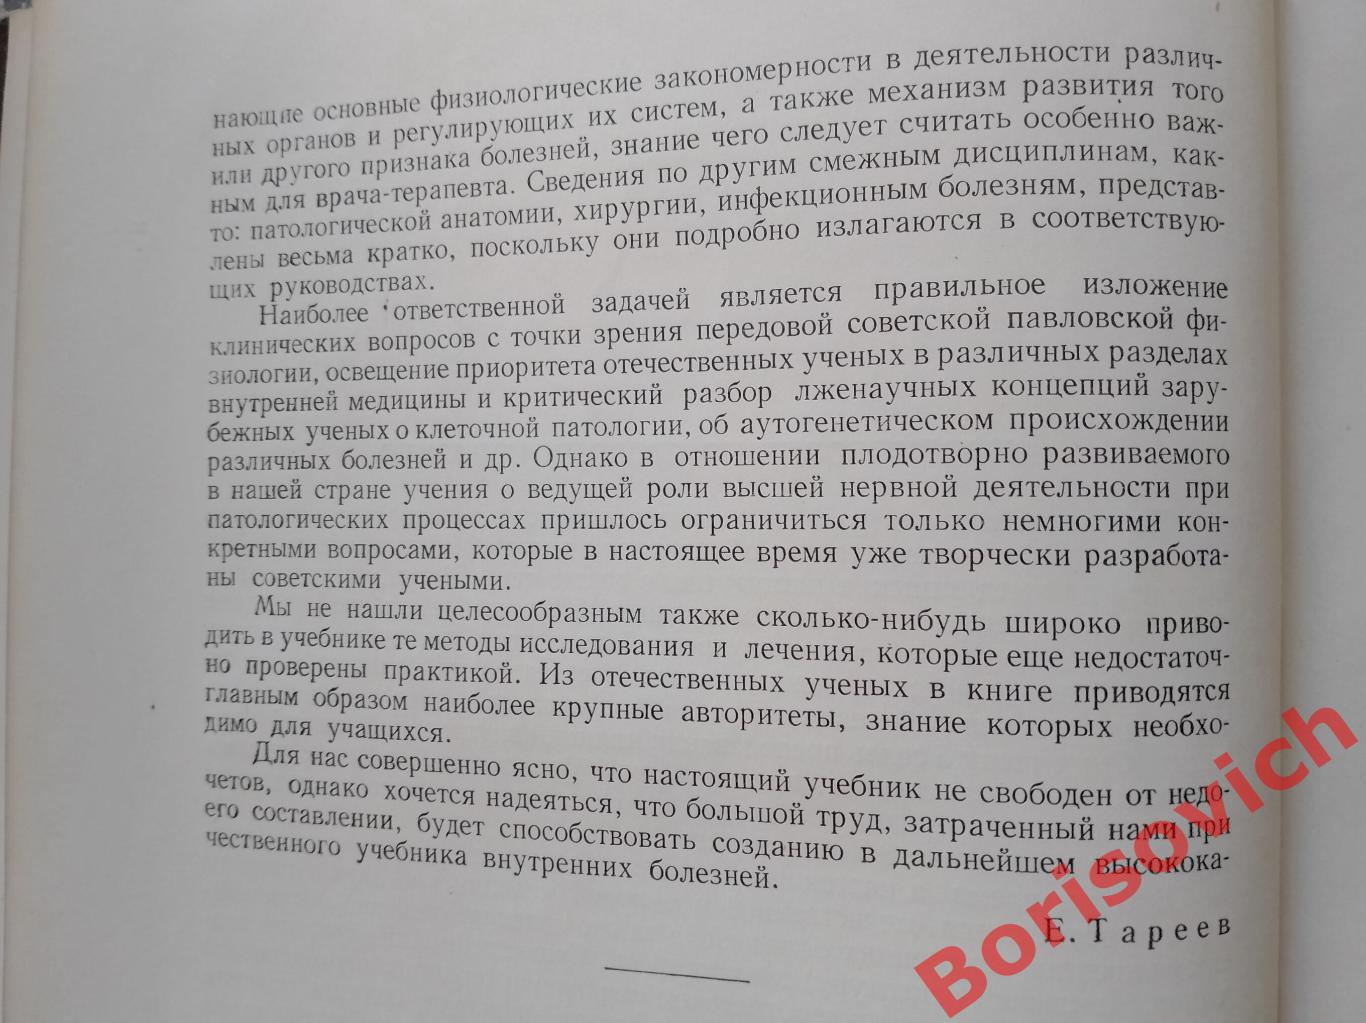 Е. И. Тареев ВНУТРЕННИЕ БОЛЕЗНИ 1956 г 582 страницы 2